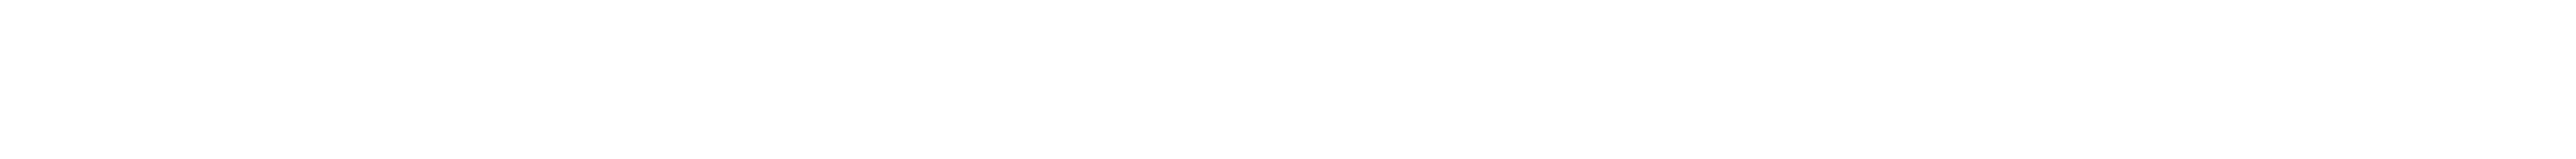 NEUBAU Odeeh NEUBAU logo collab white